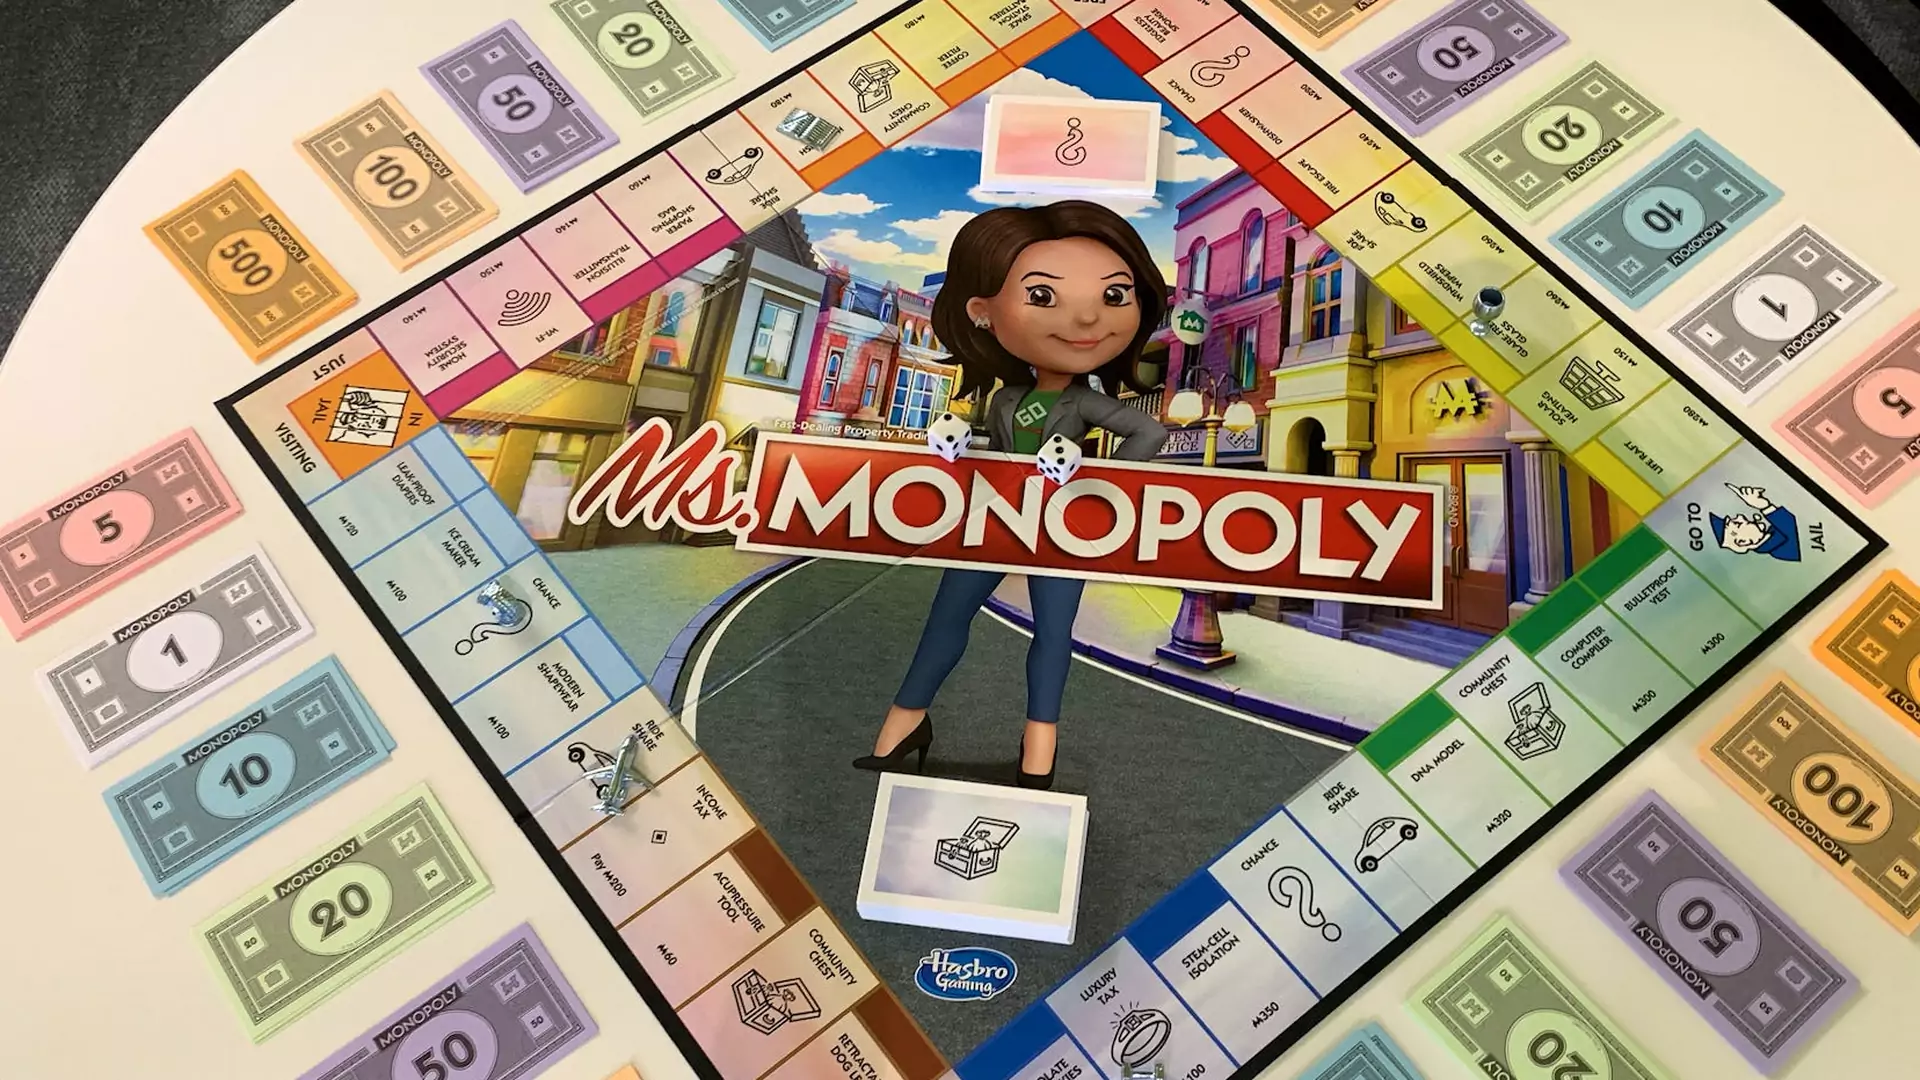 Jesteś kobietą? W najnowszym wydaniu Monopoly zarobisz więcej!